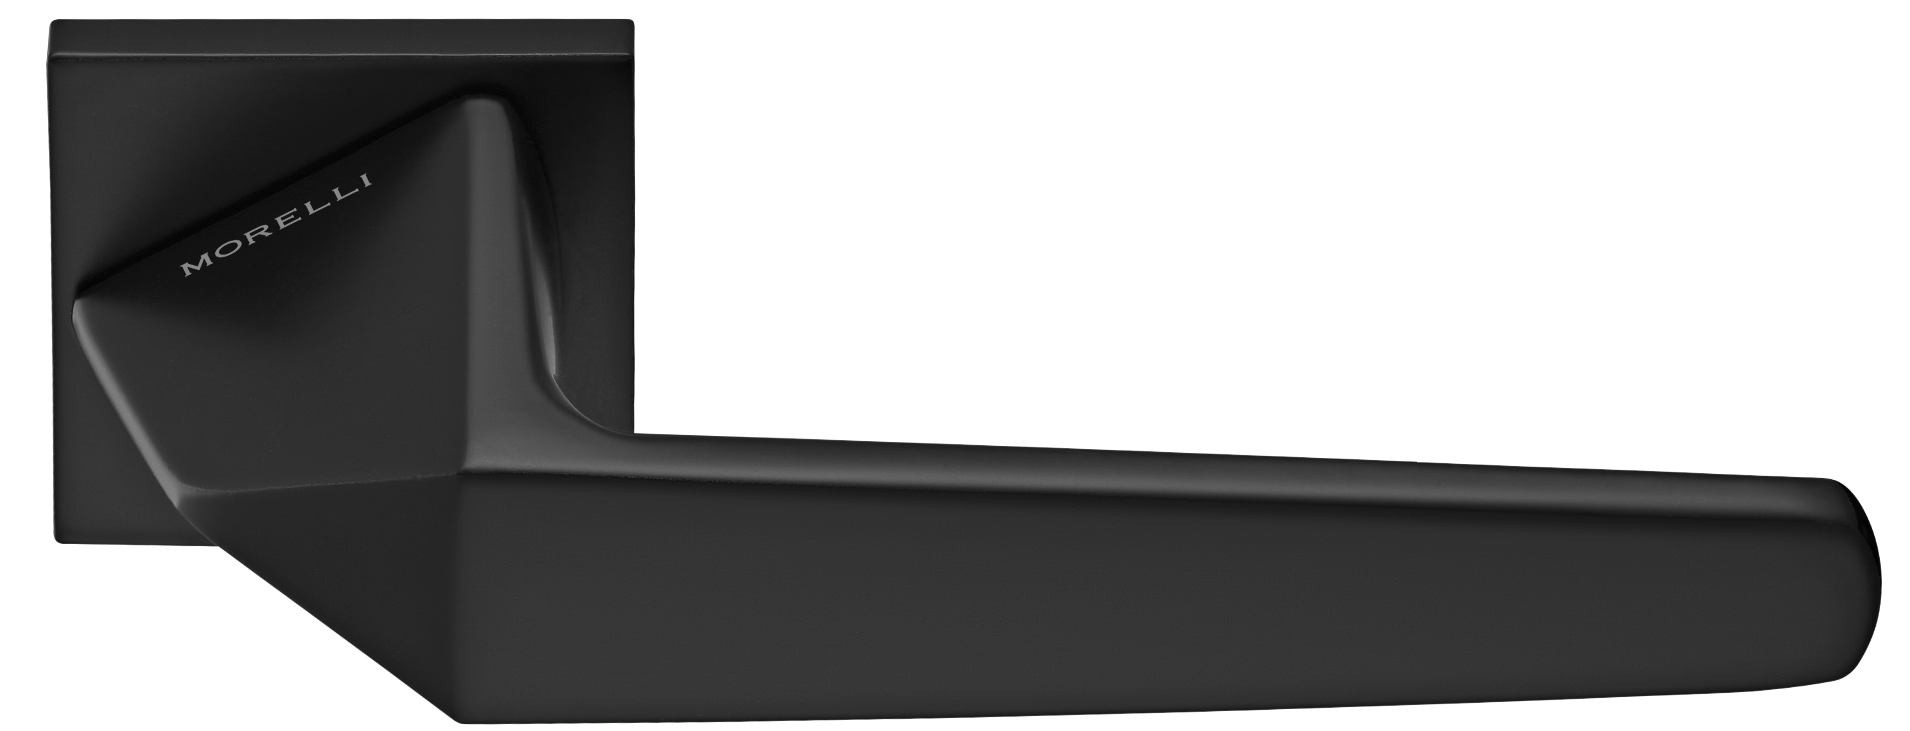 SOUK ручка дверная на квадратной розетке 6 мм, MH-55-S6 BL, цвет - черный фото купить Казань